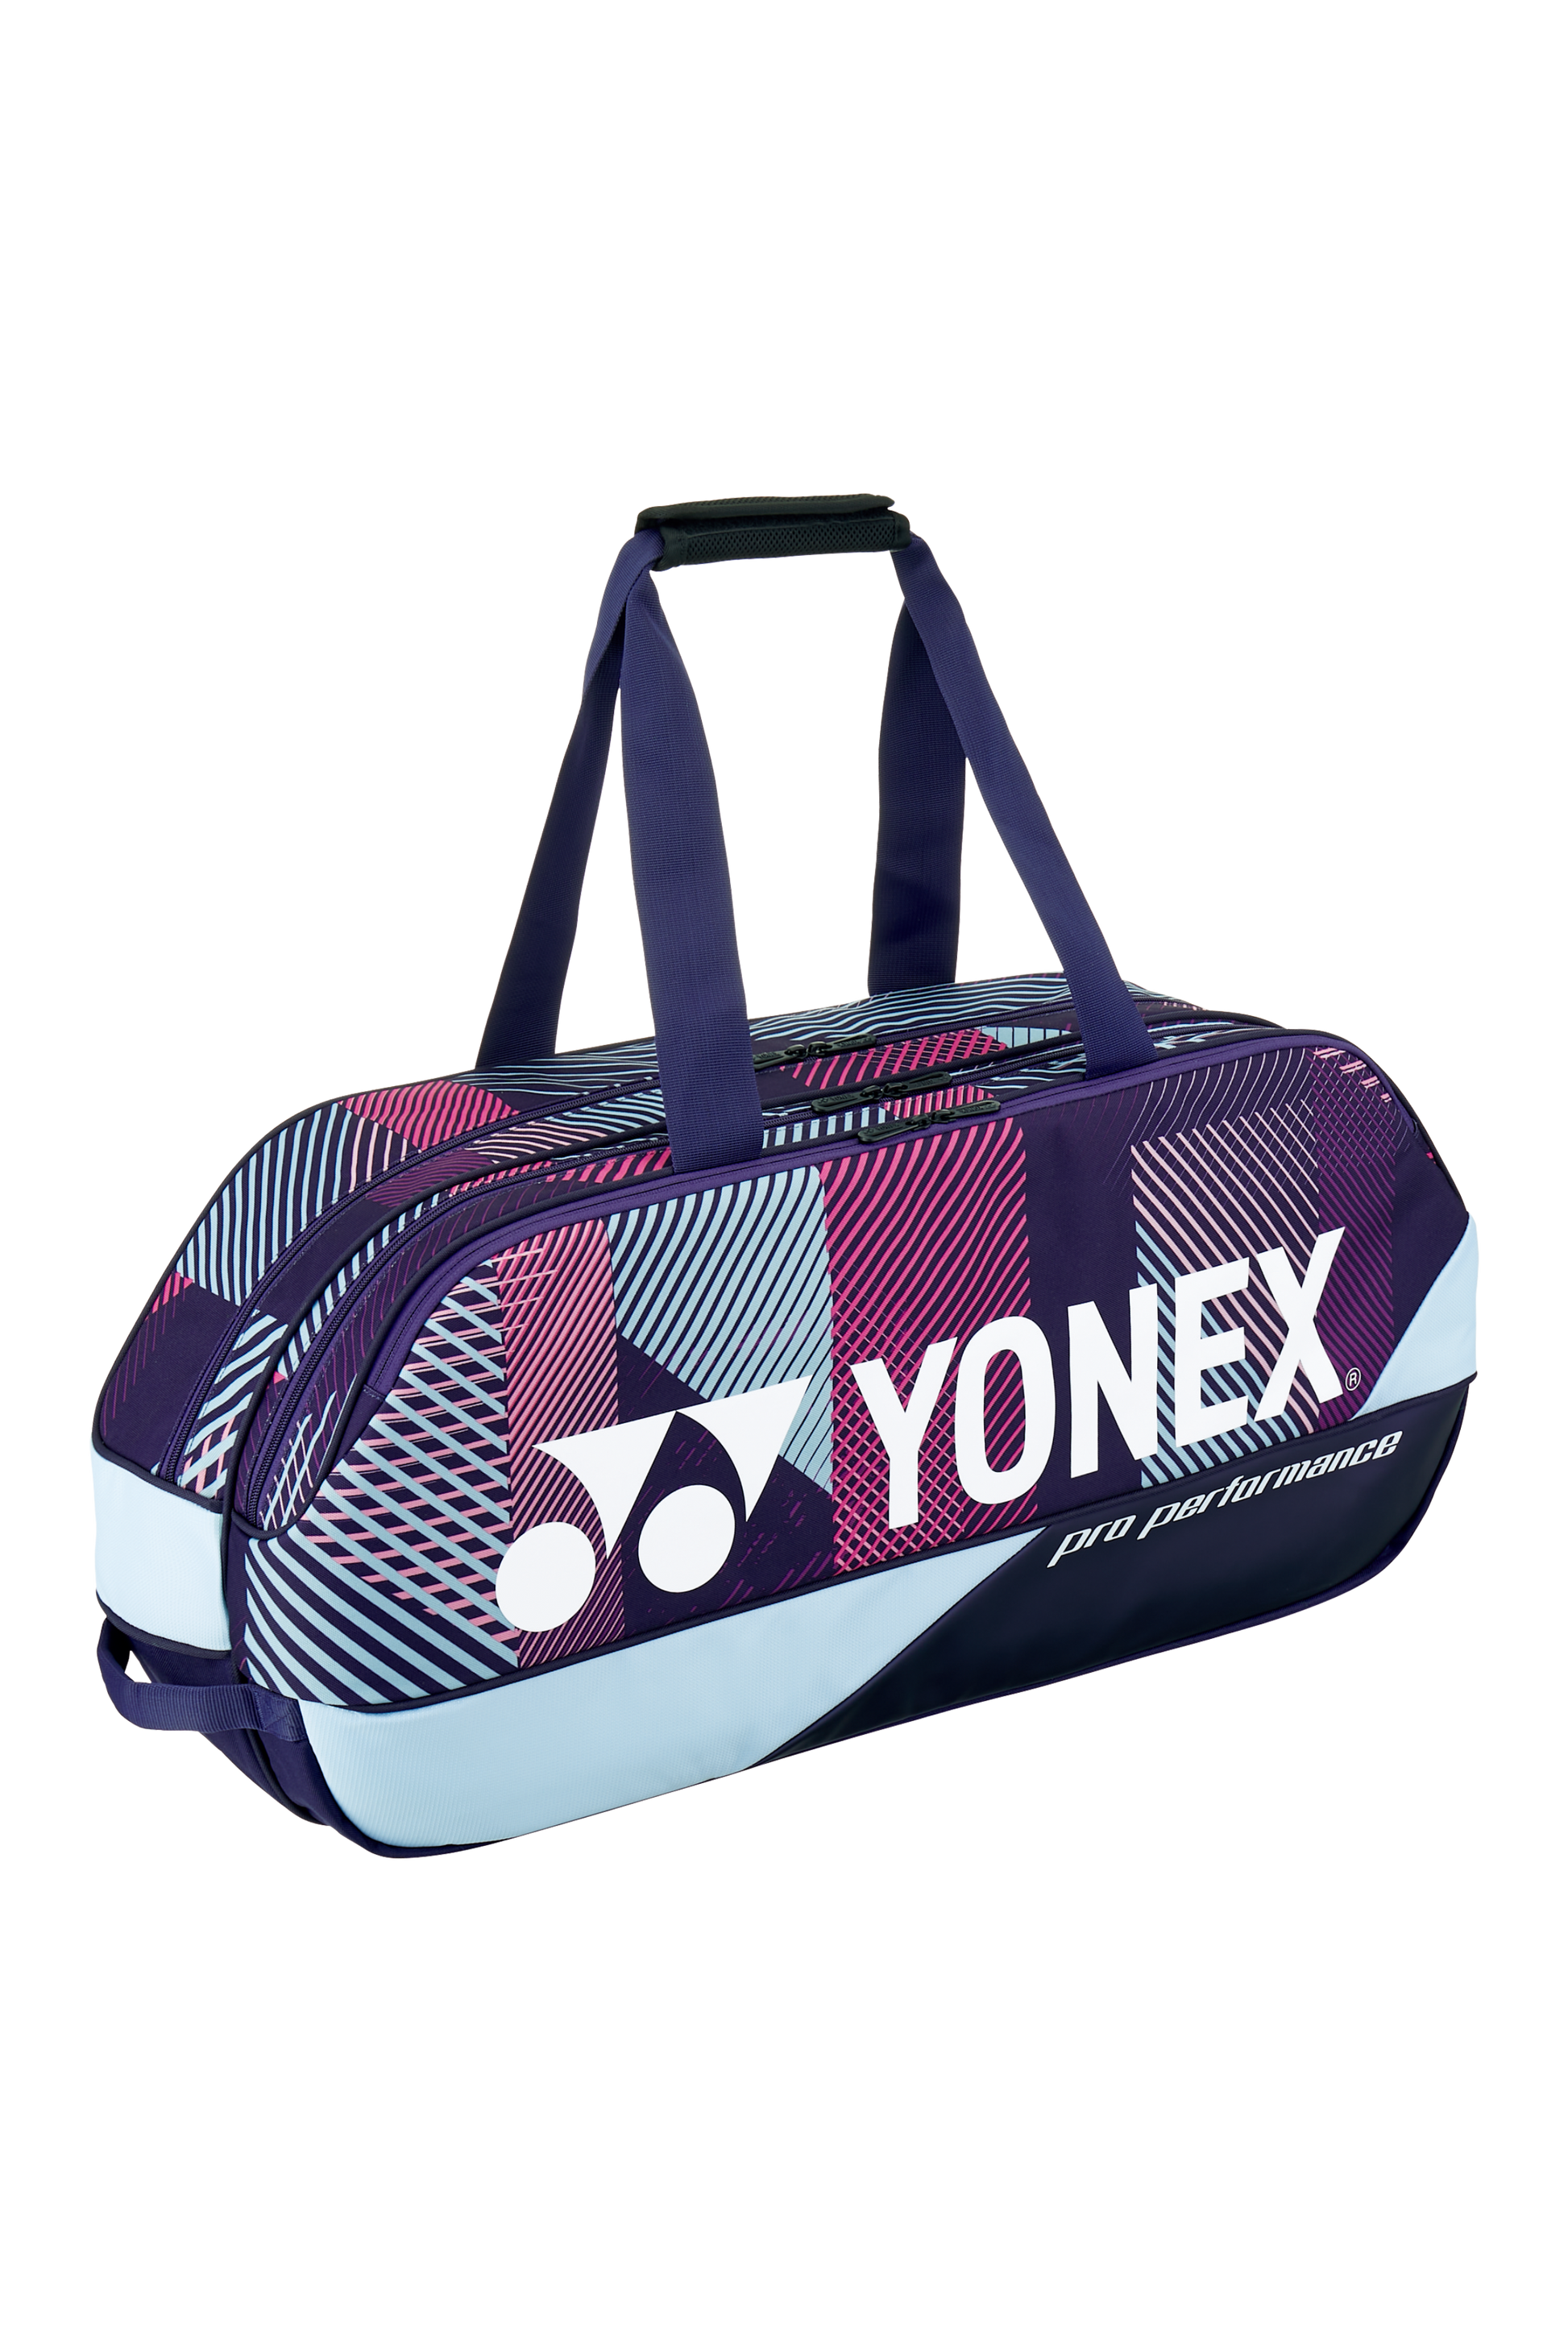 YONEX Pro Tournament Bag 92431W - Max Sports